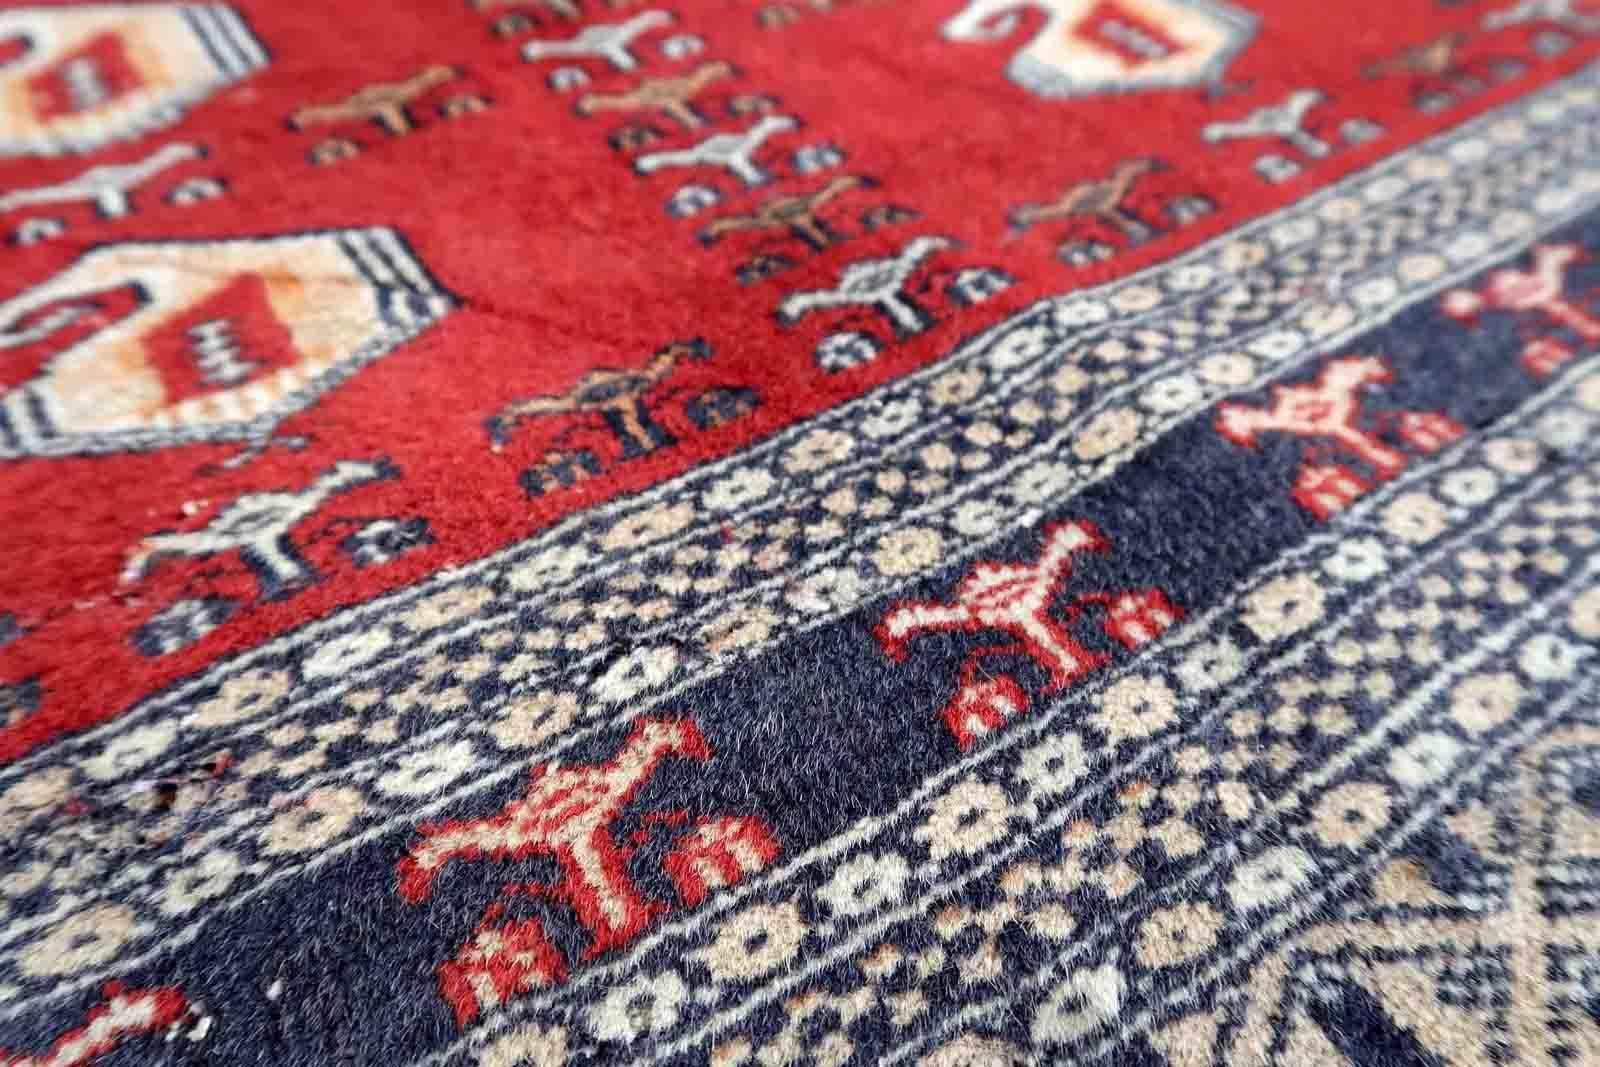 Handgefertigter usbekischer Buchara-Teppich in roter Farbe. Der Teppich wurde in der Mitte des 20. Jahrhunderts aus Wolle hergestellt. Es ist im Originalzustand, es hat einige niedrige Flor.

-zustand: original, etwas niedriger Flor,

-etwa: